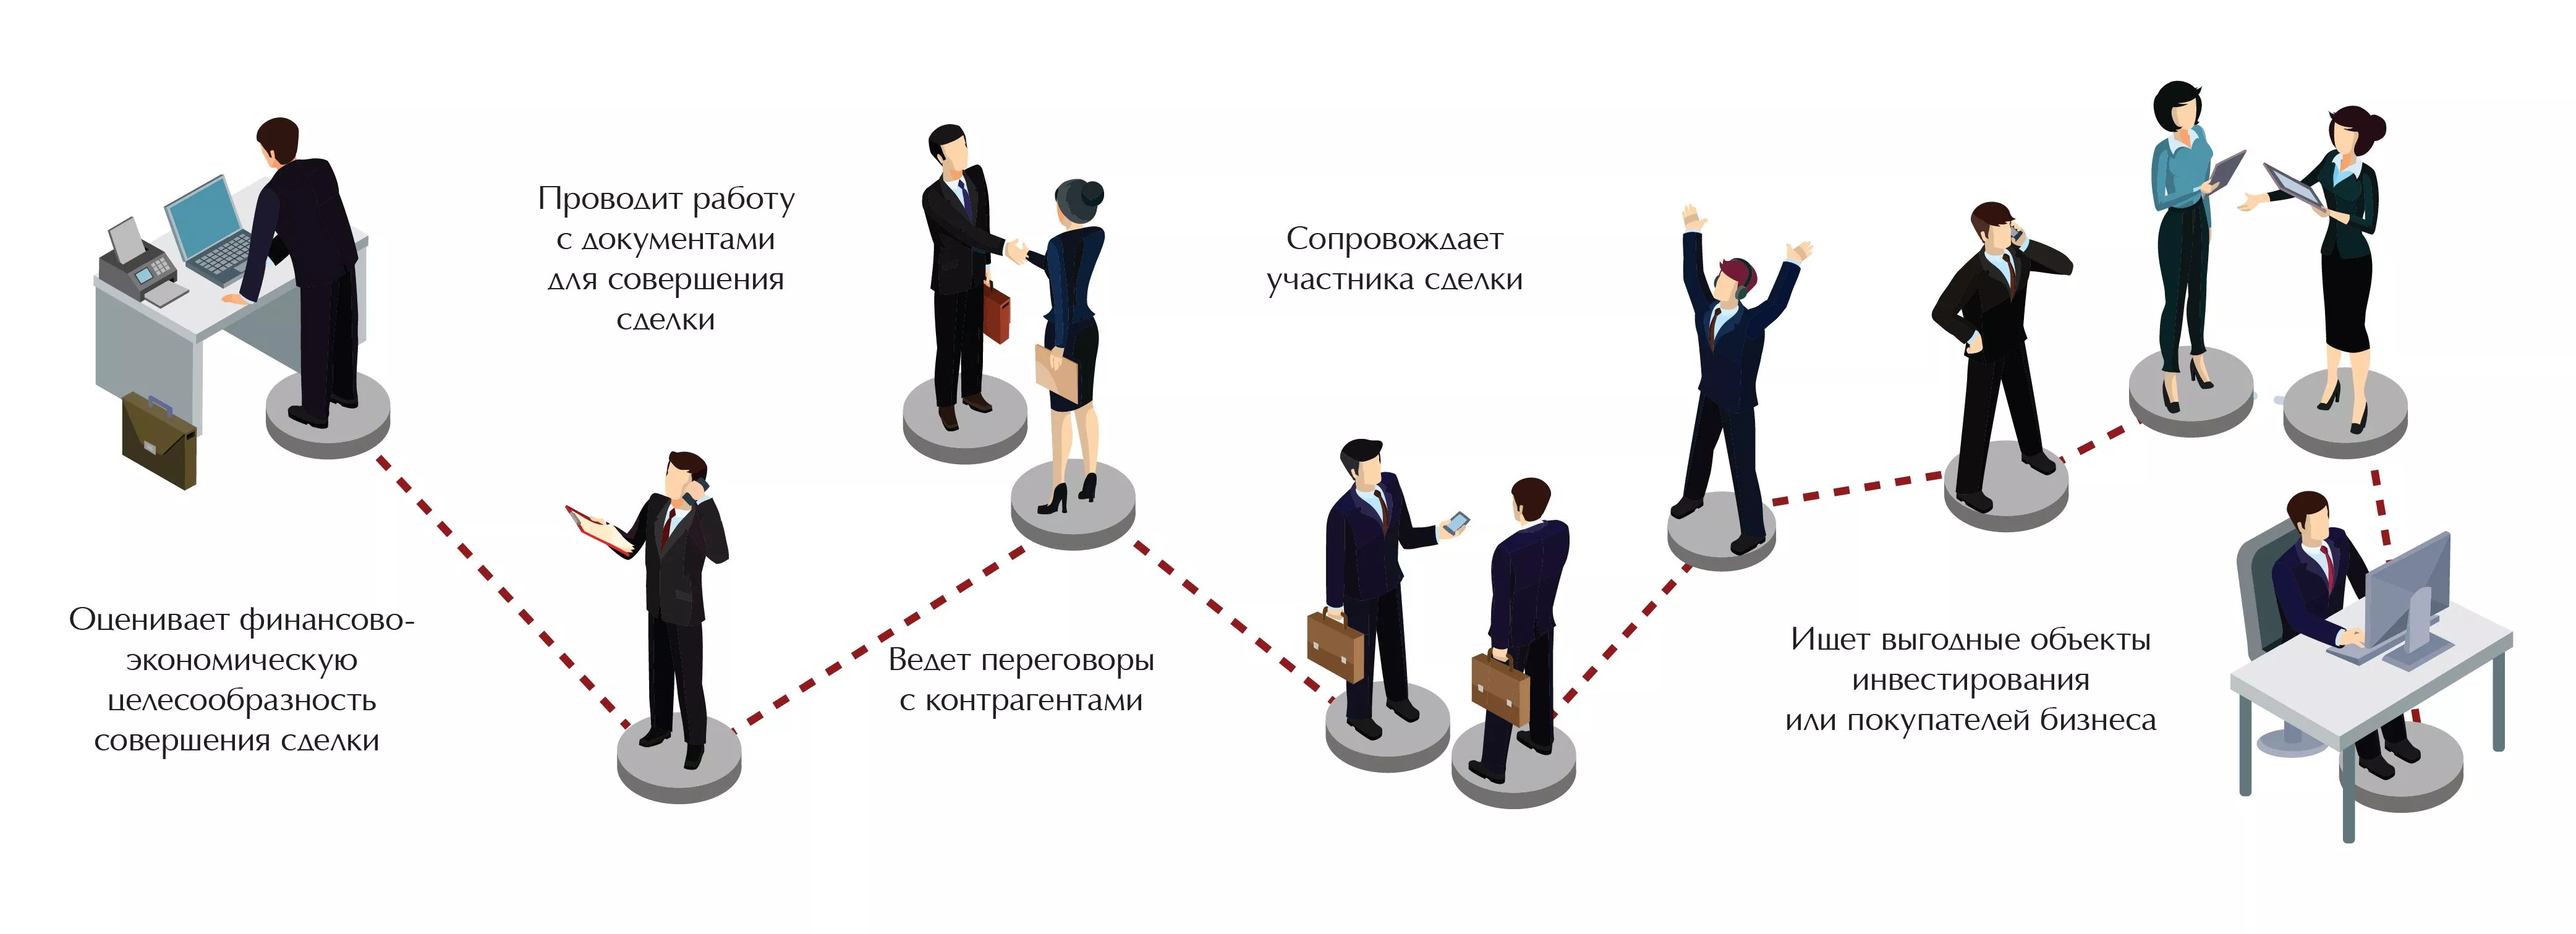 Юридическое сопровождение сделок с недвижимостью в Москве по честной стоимости от центра «ЮСТИКОМ». Надежное сопровождение бизнеса, как малого, так и крупных организаций.